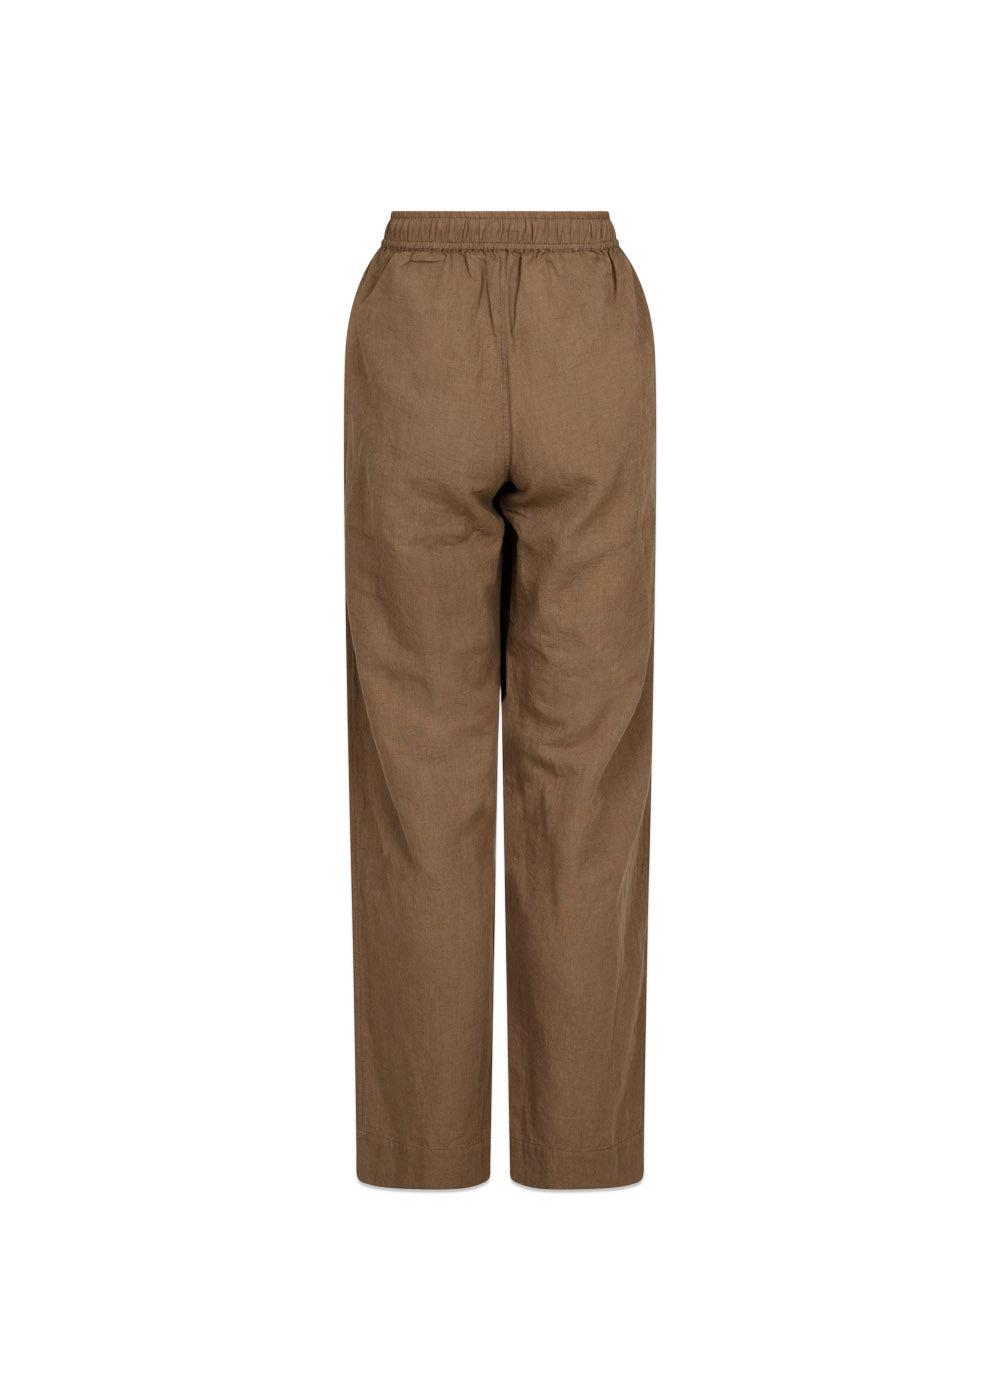 Sonar Linen Pants - Brown